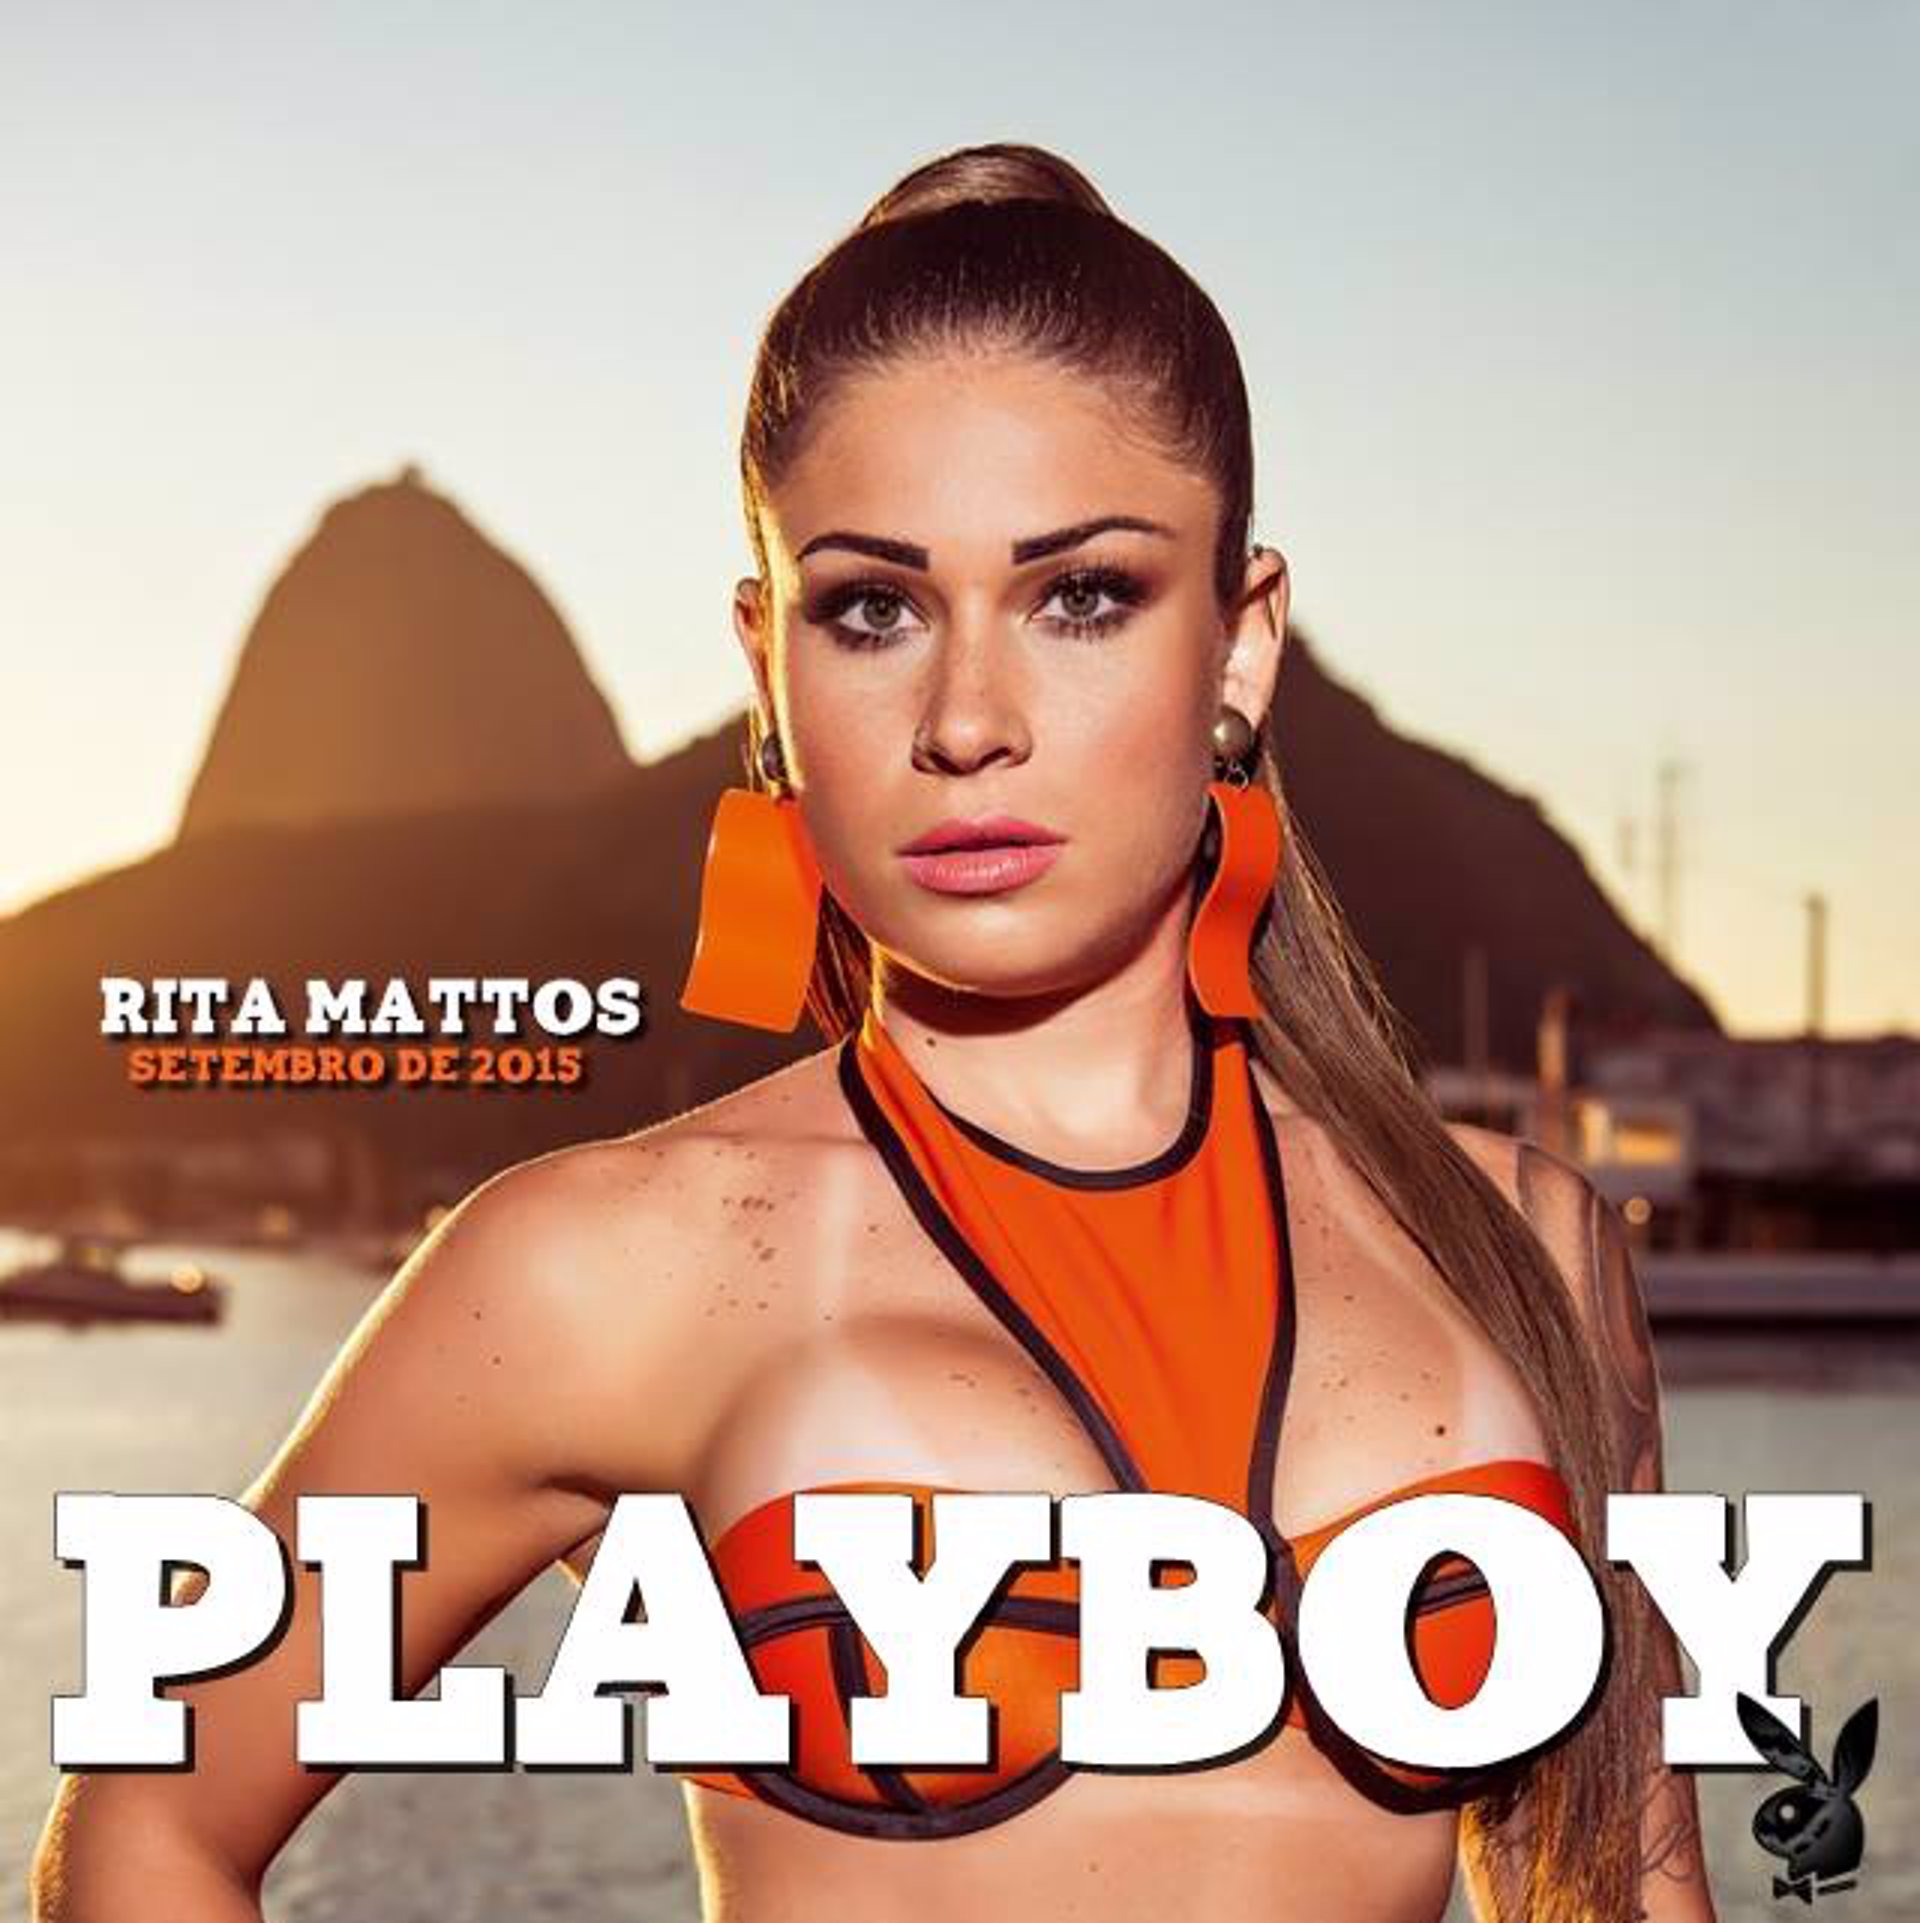 Rita Mattos en la revista Playboy